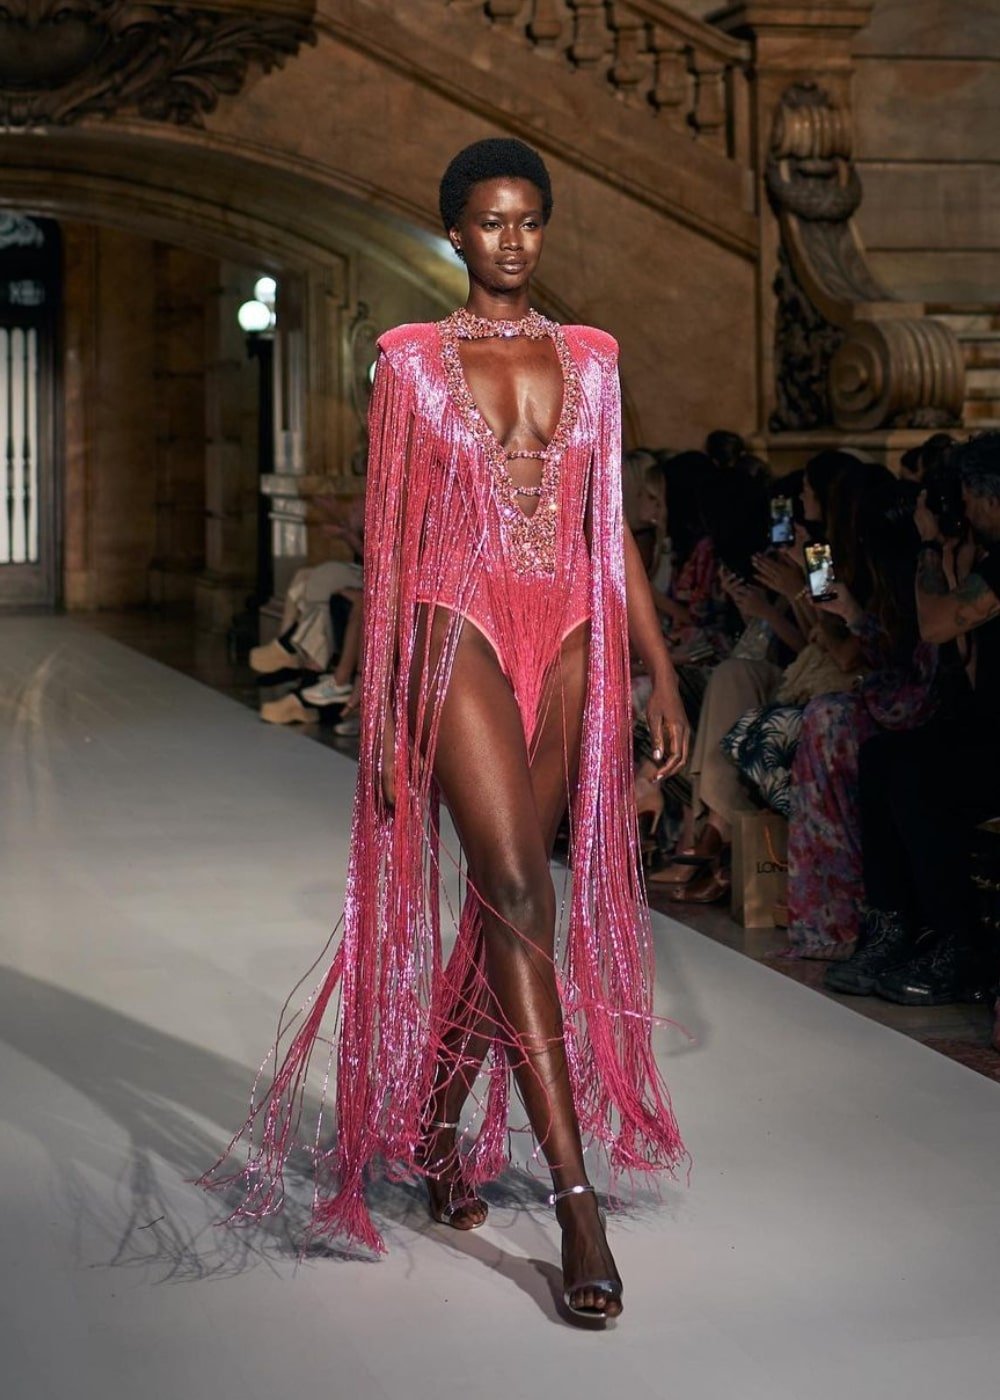 PatBo - vestido longo de franjas rosa - semana de moda de Nova York - Primavera - modelo andando pela passarela - https://stealthelook.com.br